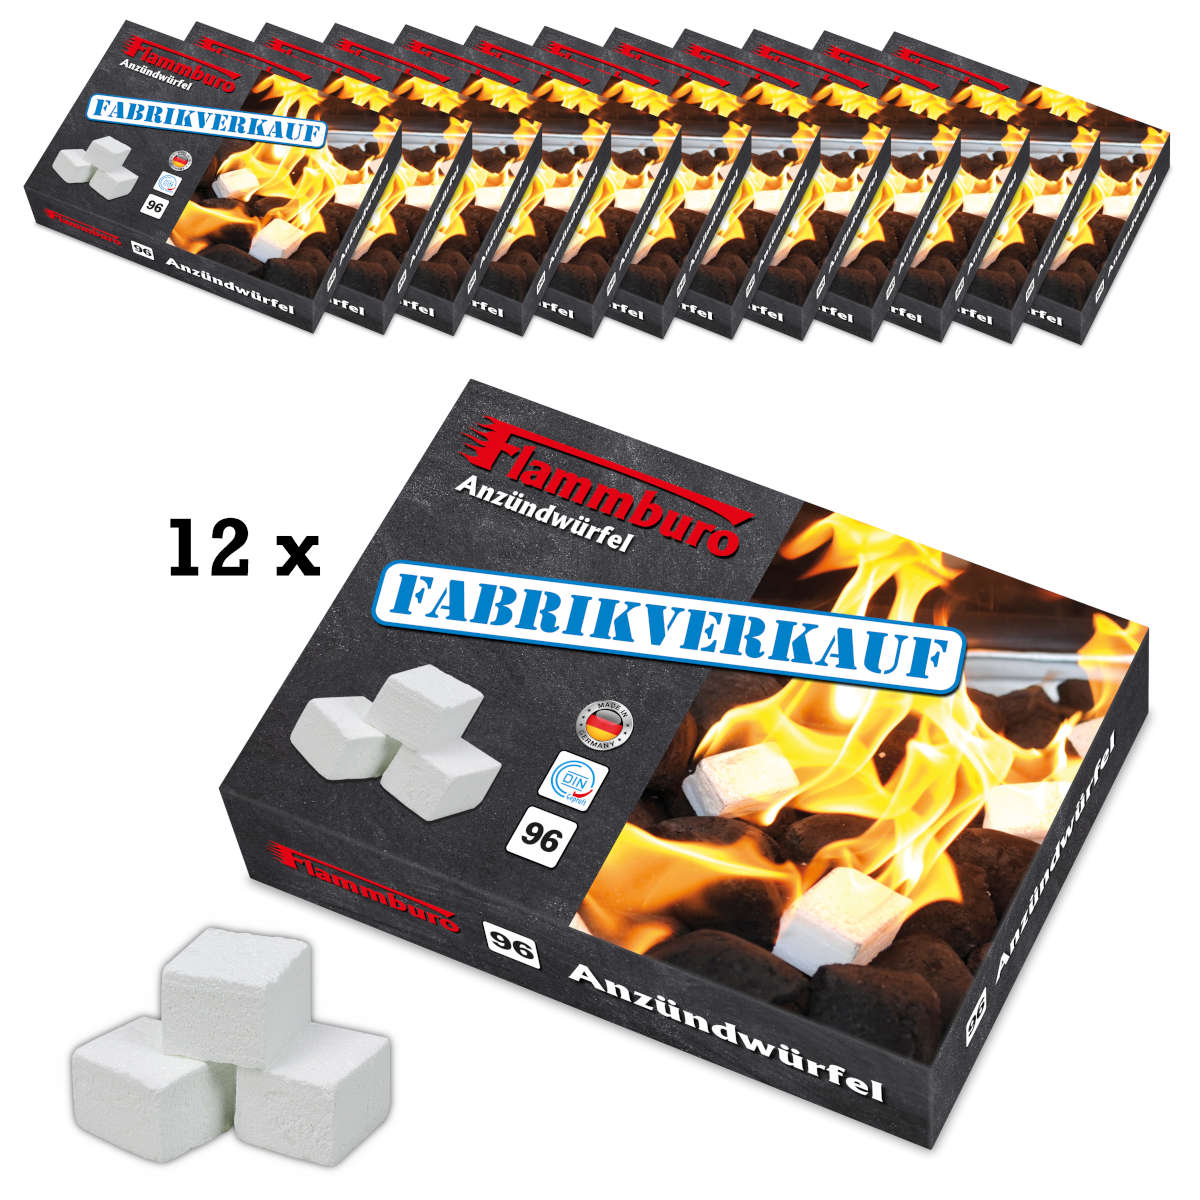 Paraffin lighter cubes - 24 lighter plates / 1152 cubes